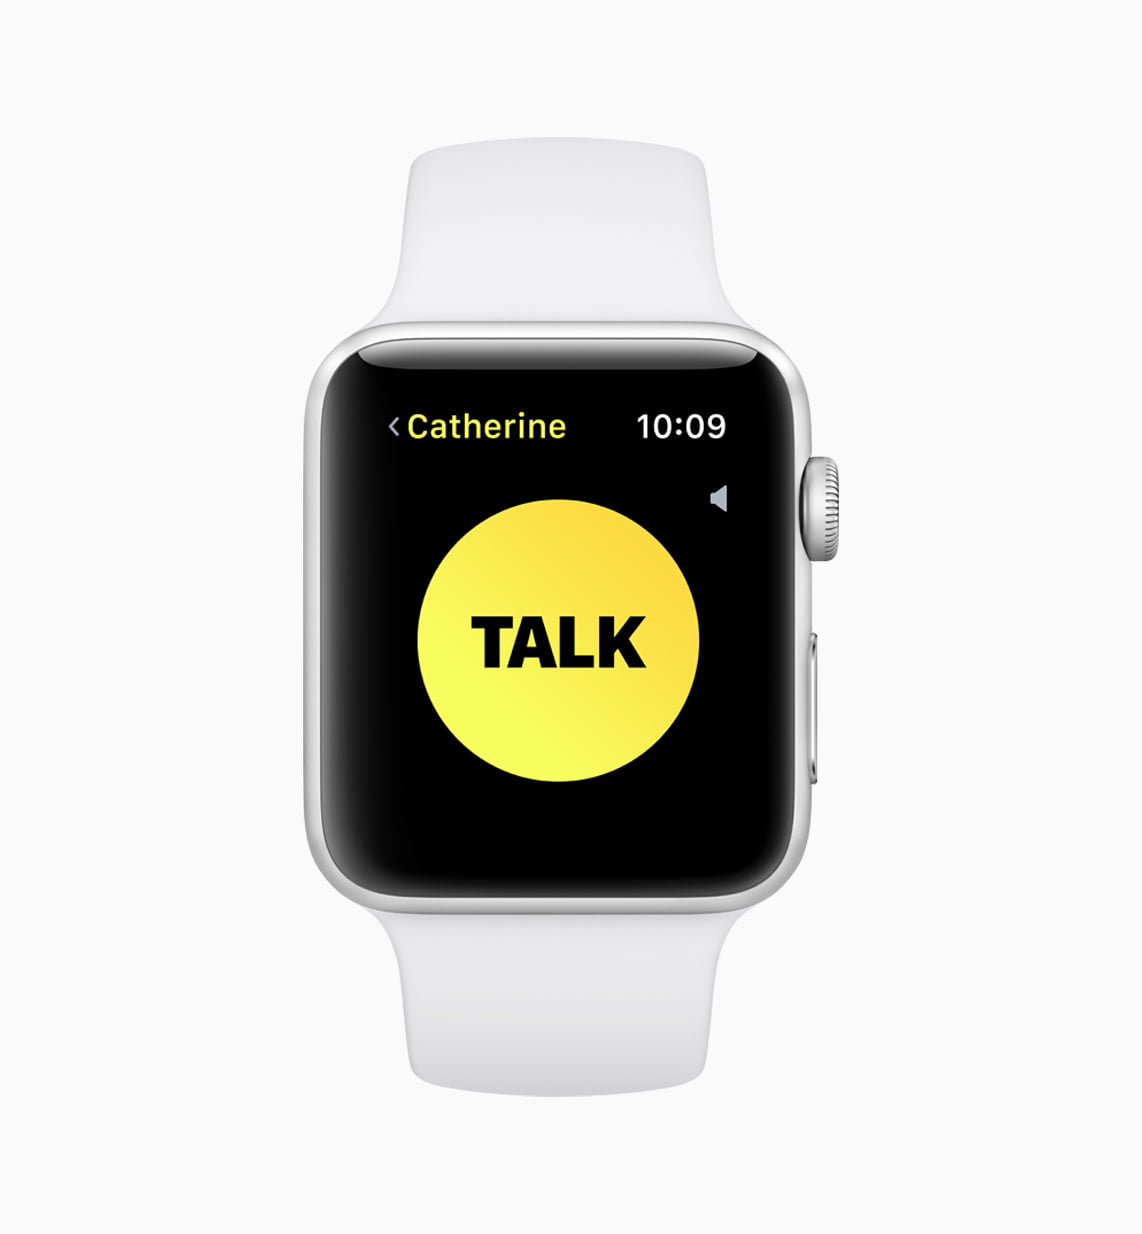 Apple watchOS 5 Walkie Talkie screen 06042018